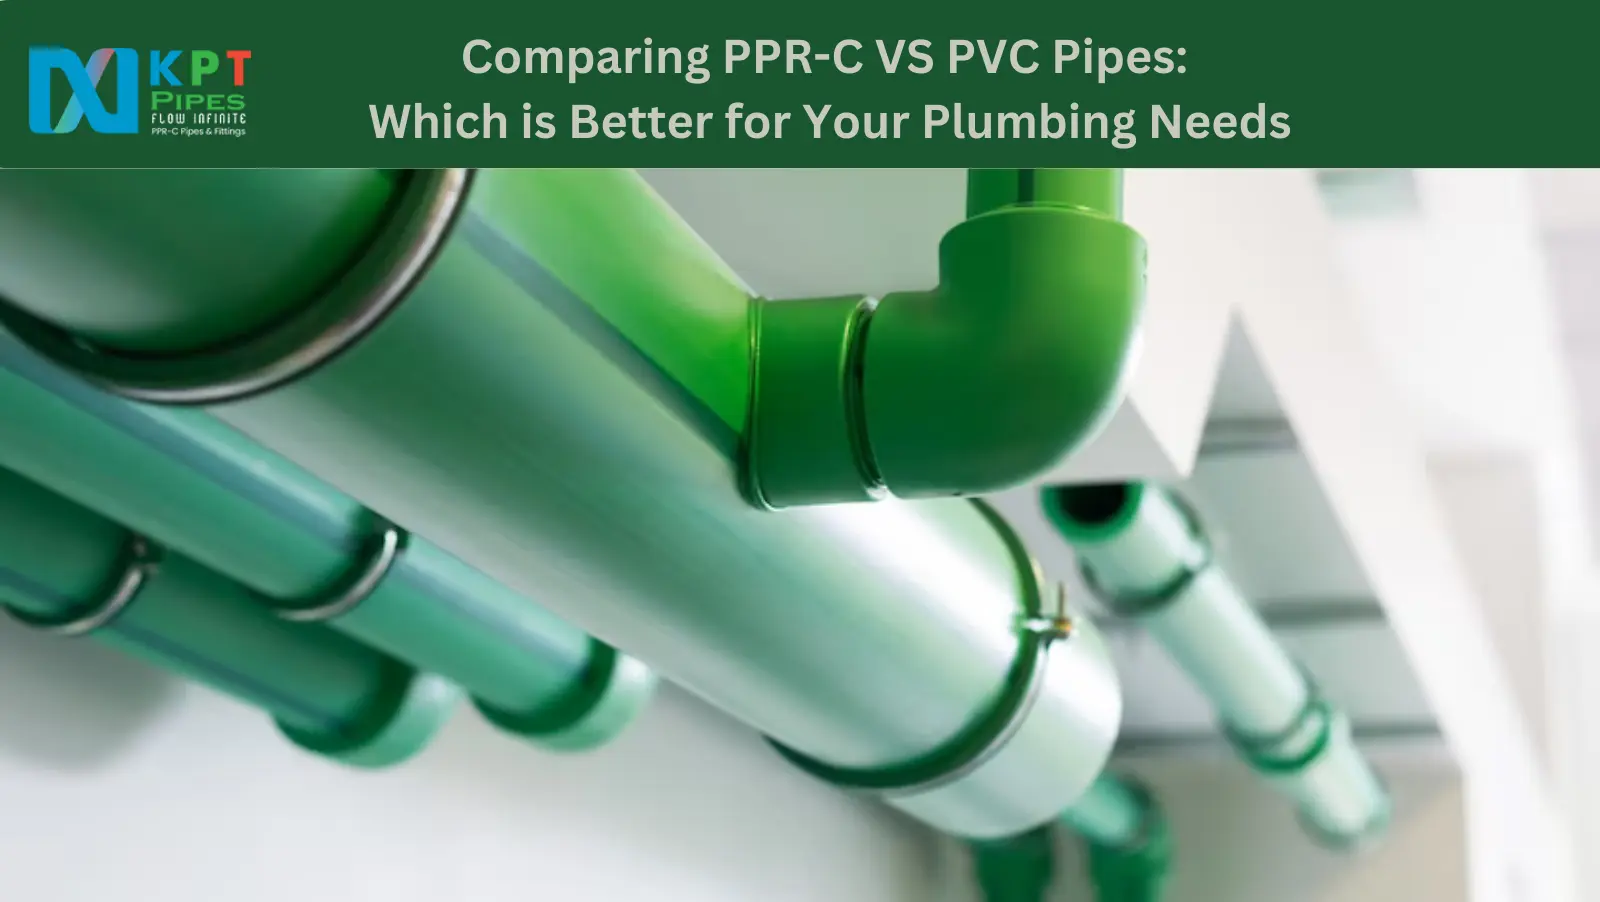 PPR-C VS PVC Pipes